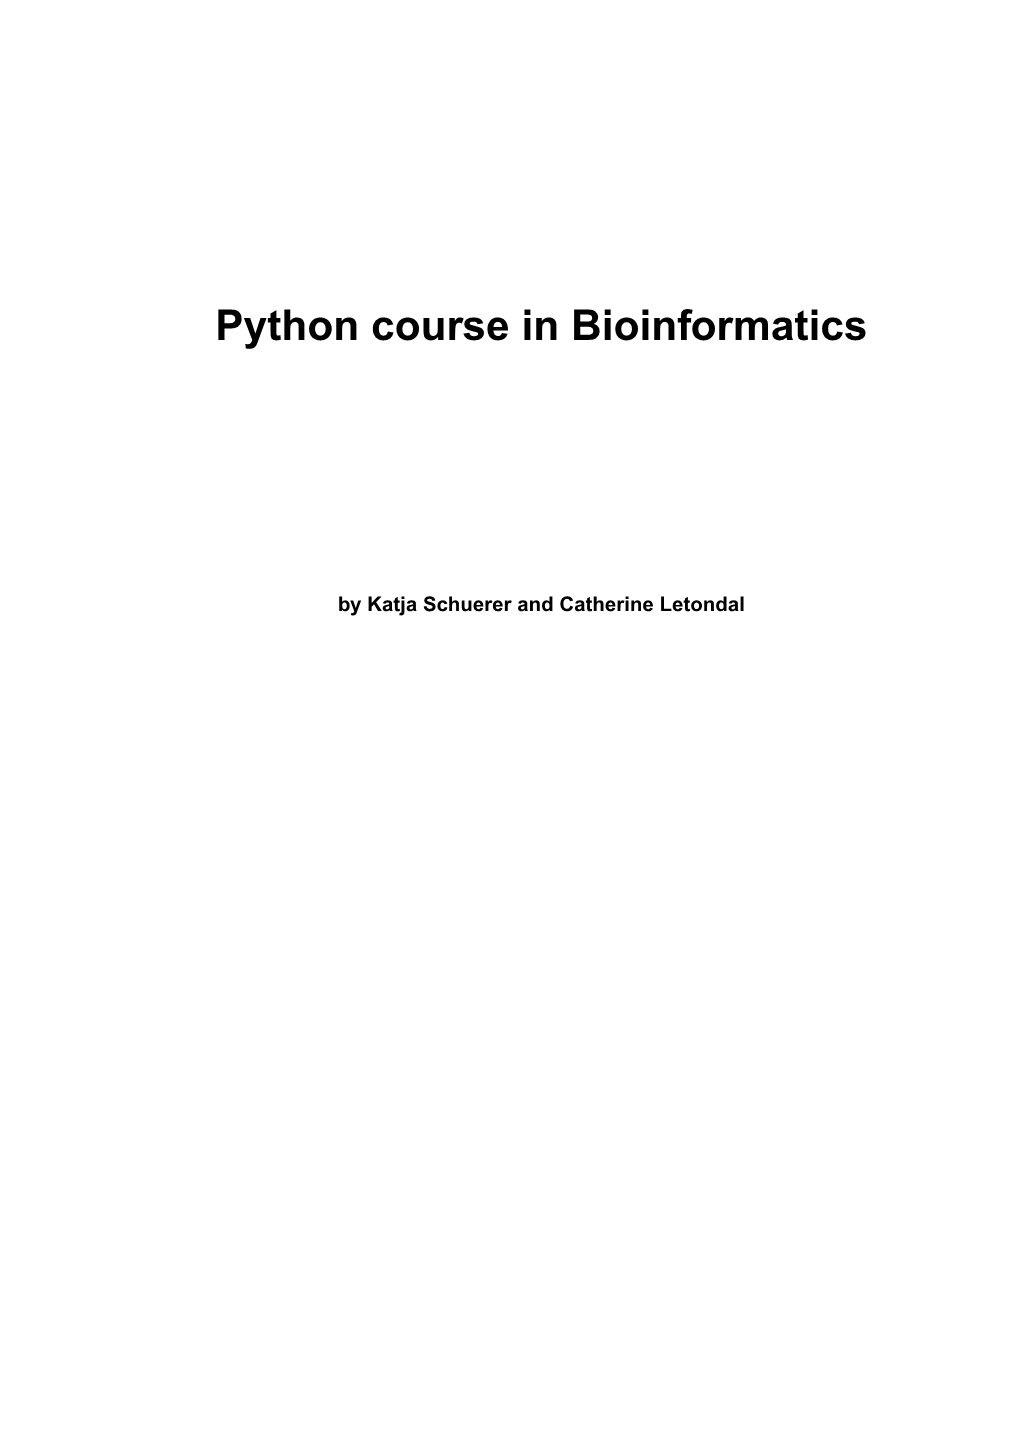 Python Course in Bioinformatics